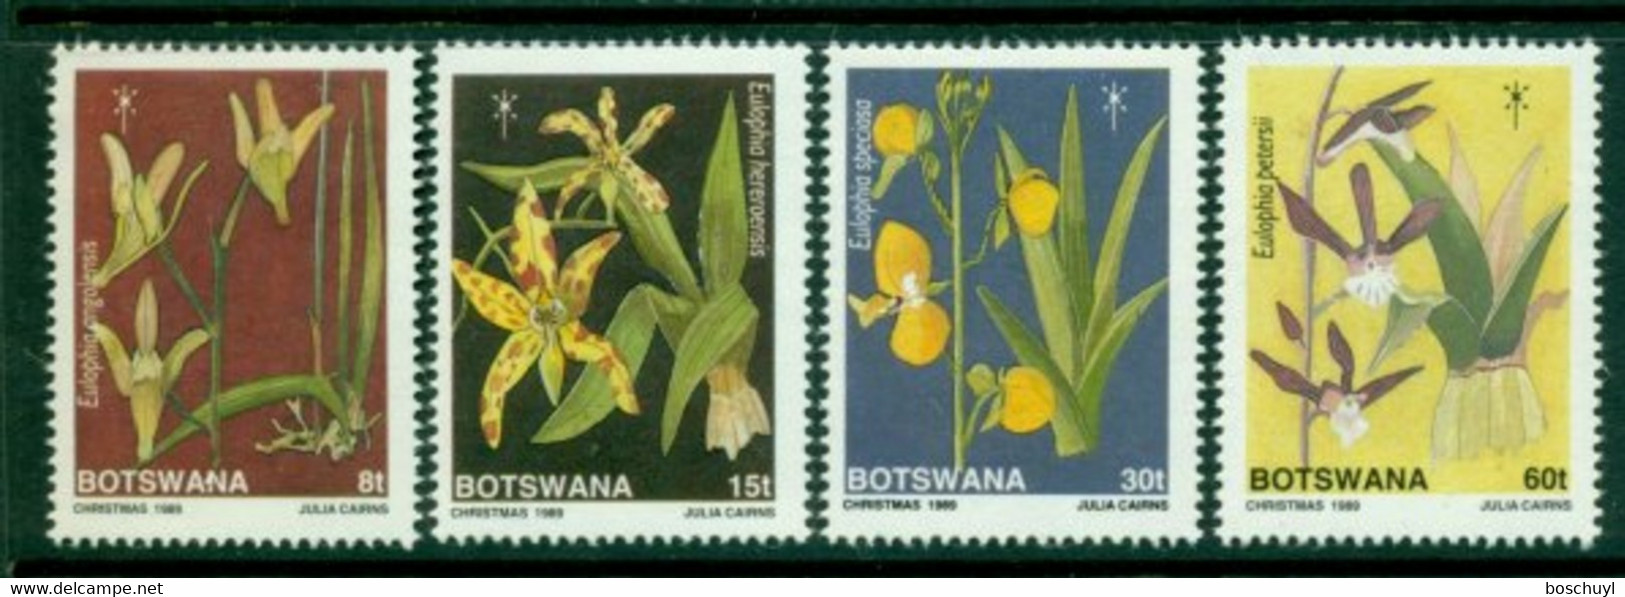 Botswana, 1989, Orchids, Flowers, Christmas, MNH, Michel 463-466 - Botswana (1966-...)